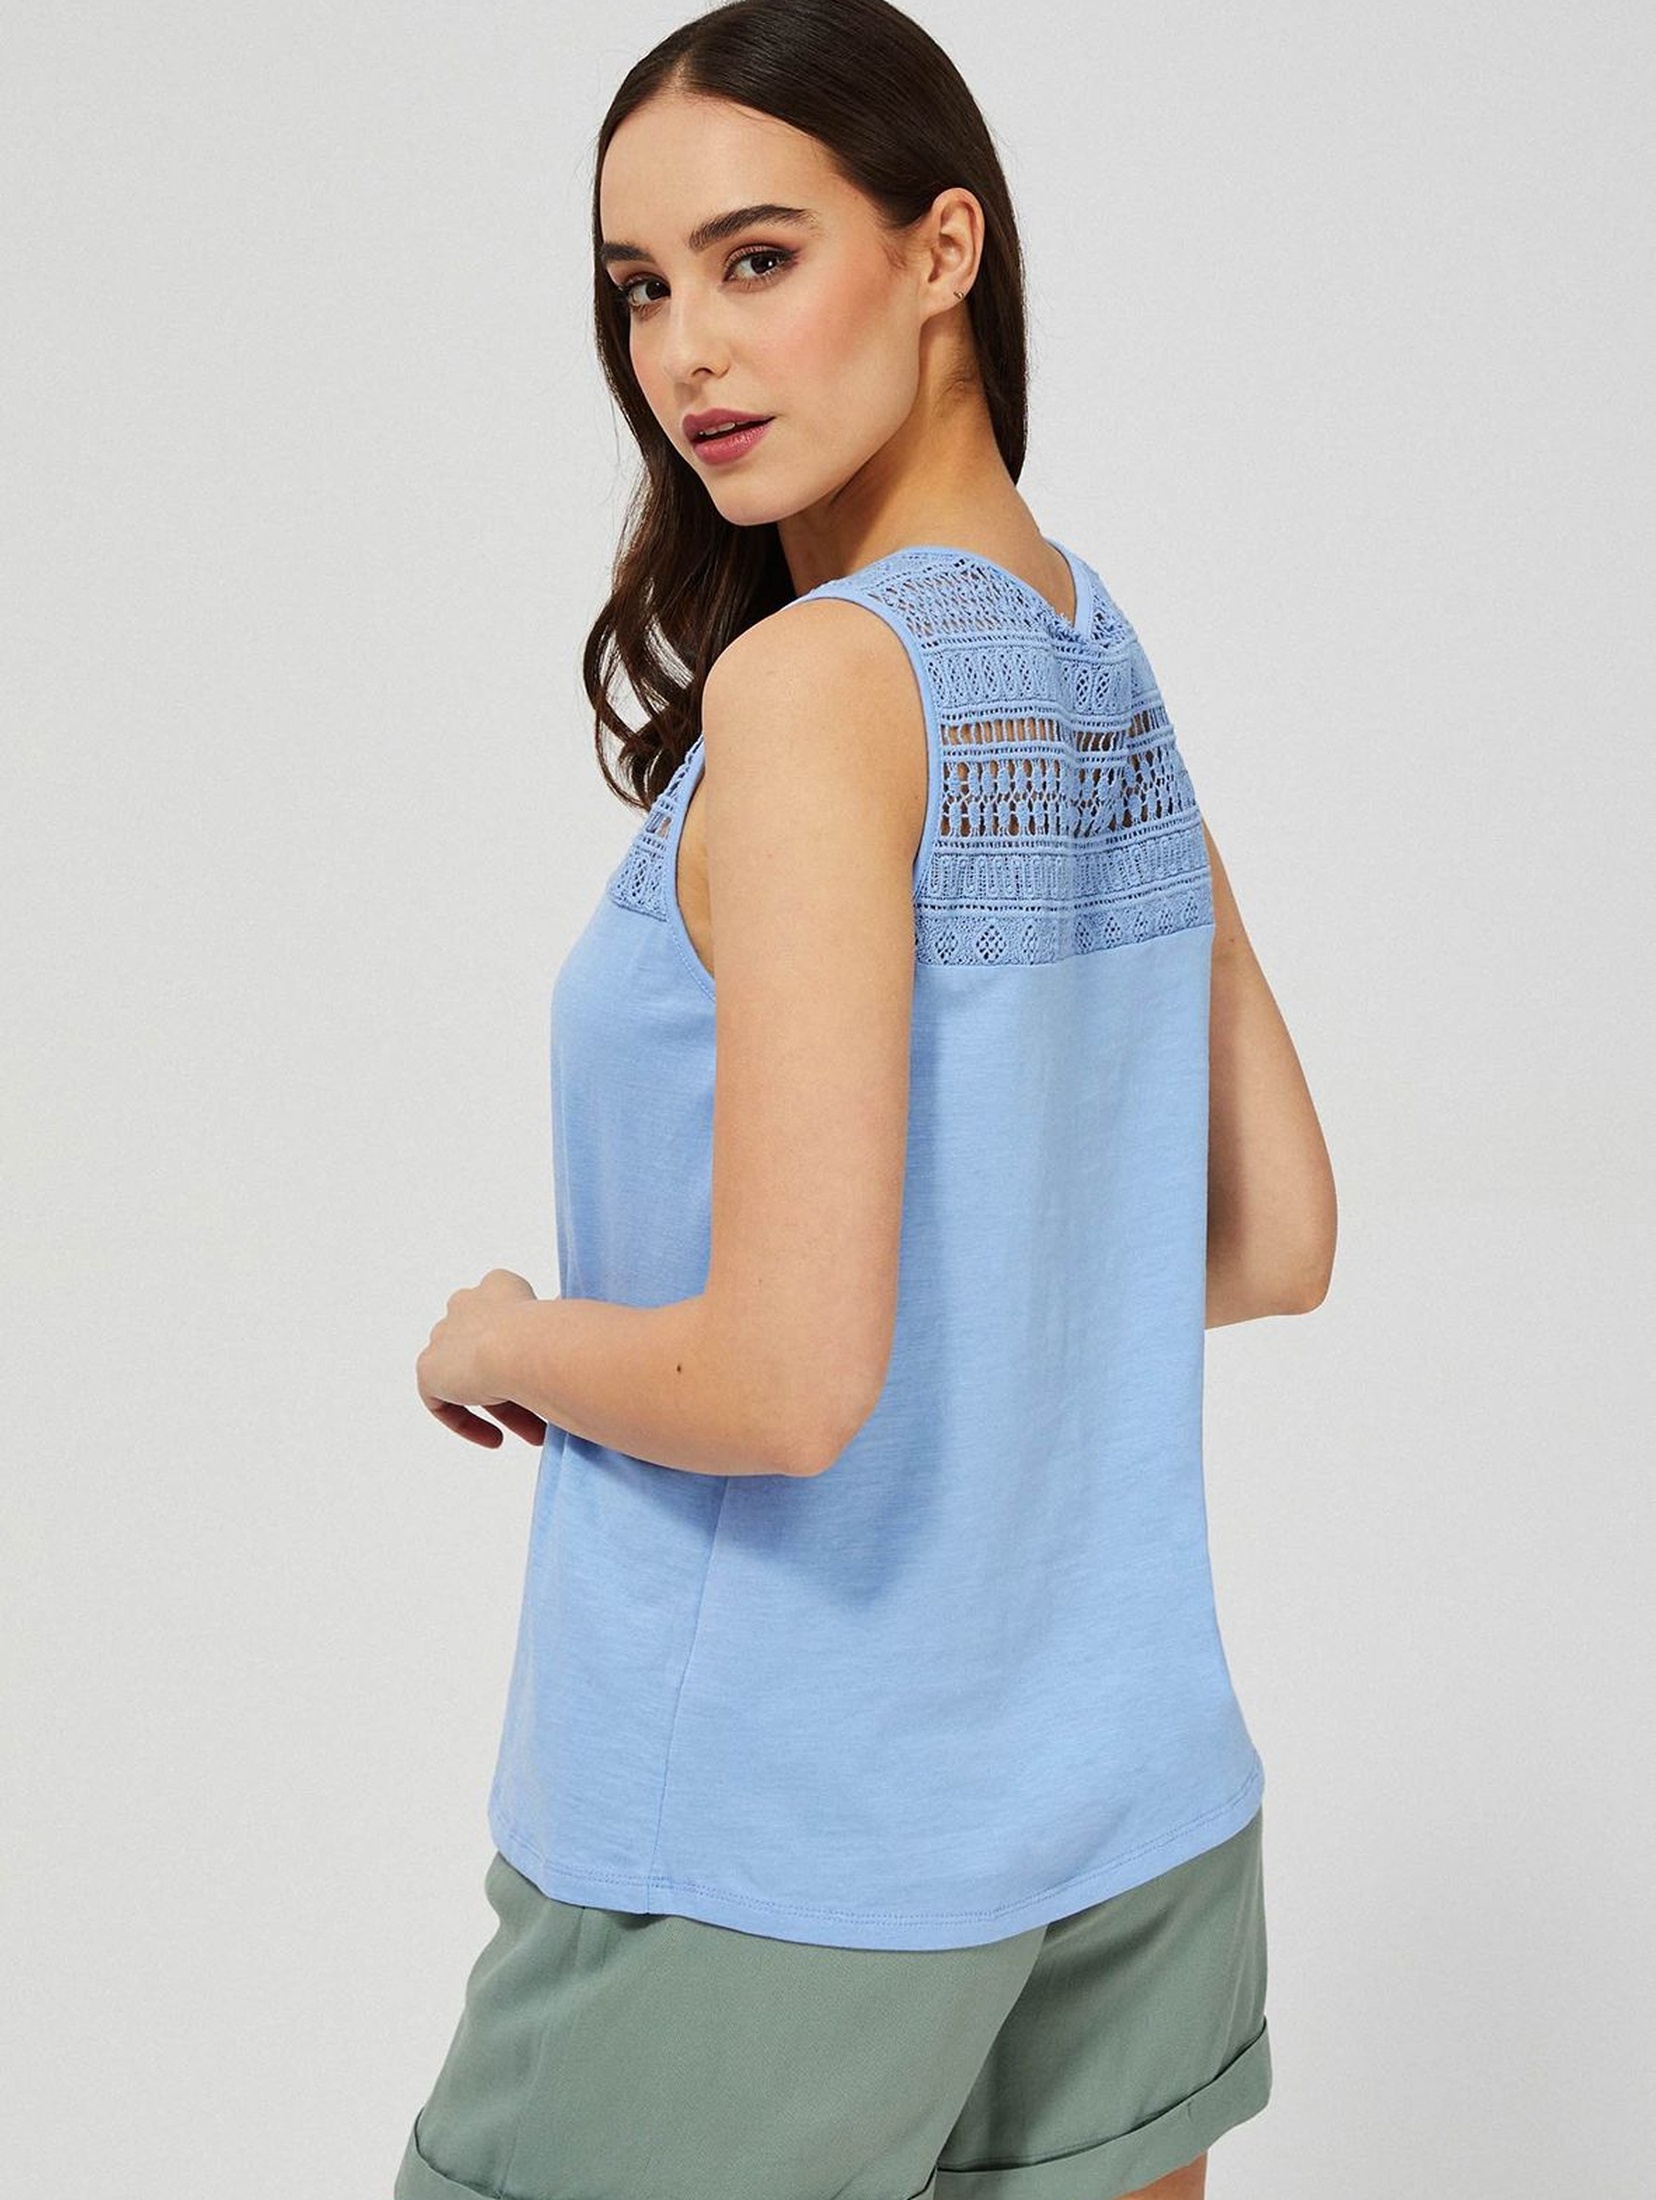 Bawełniany t-shirt damski z ażurowym wzorem - niebieska